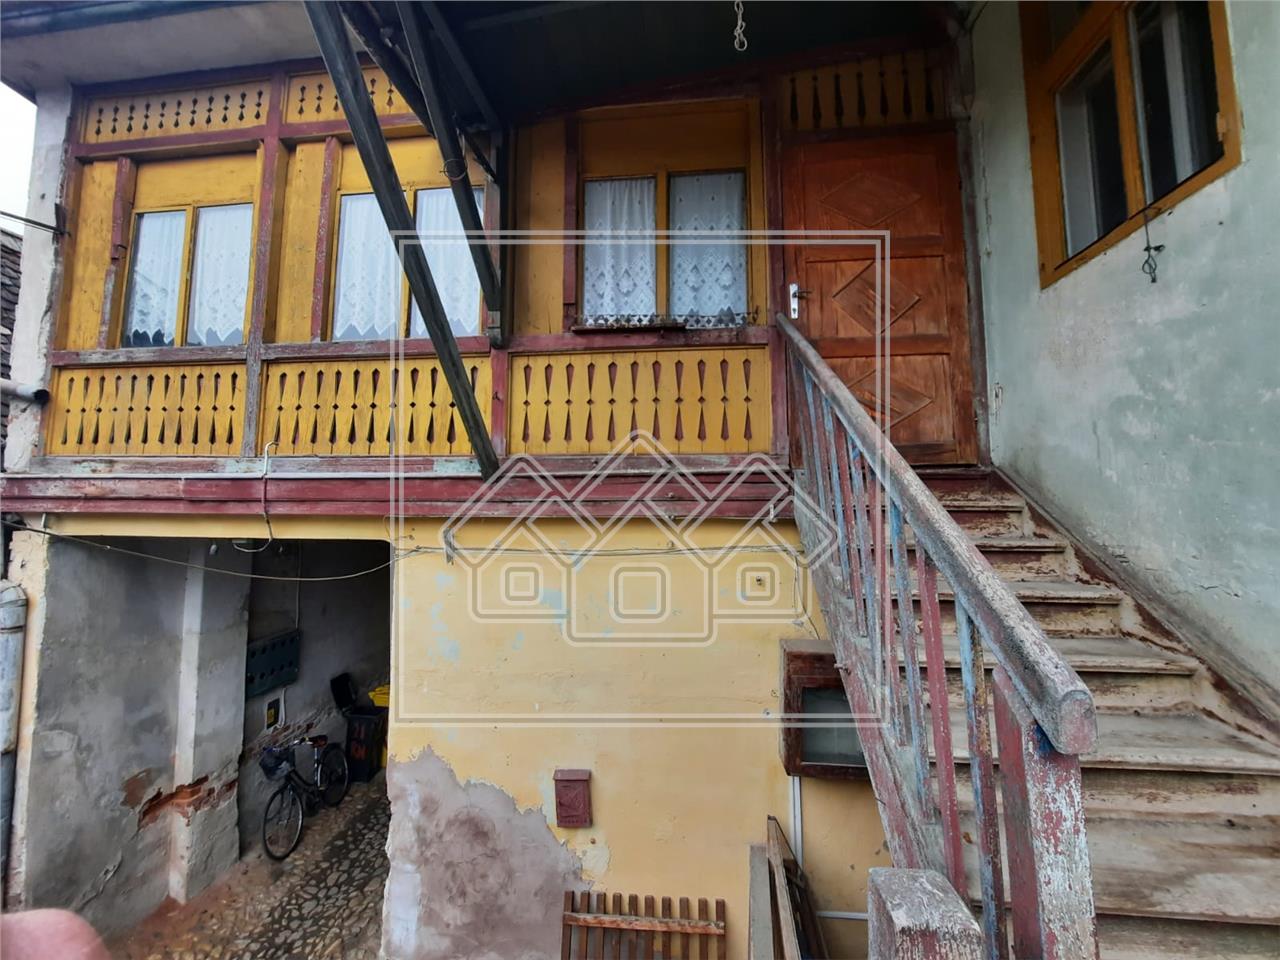 Wohnung zu verkaufen in Sibiu -im Haus -132m?, Grdstck 674m? -Turnisor